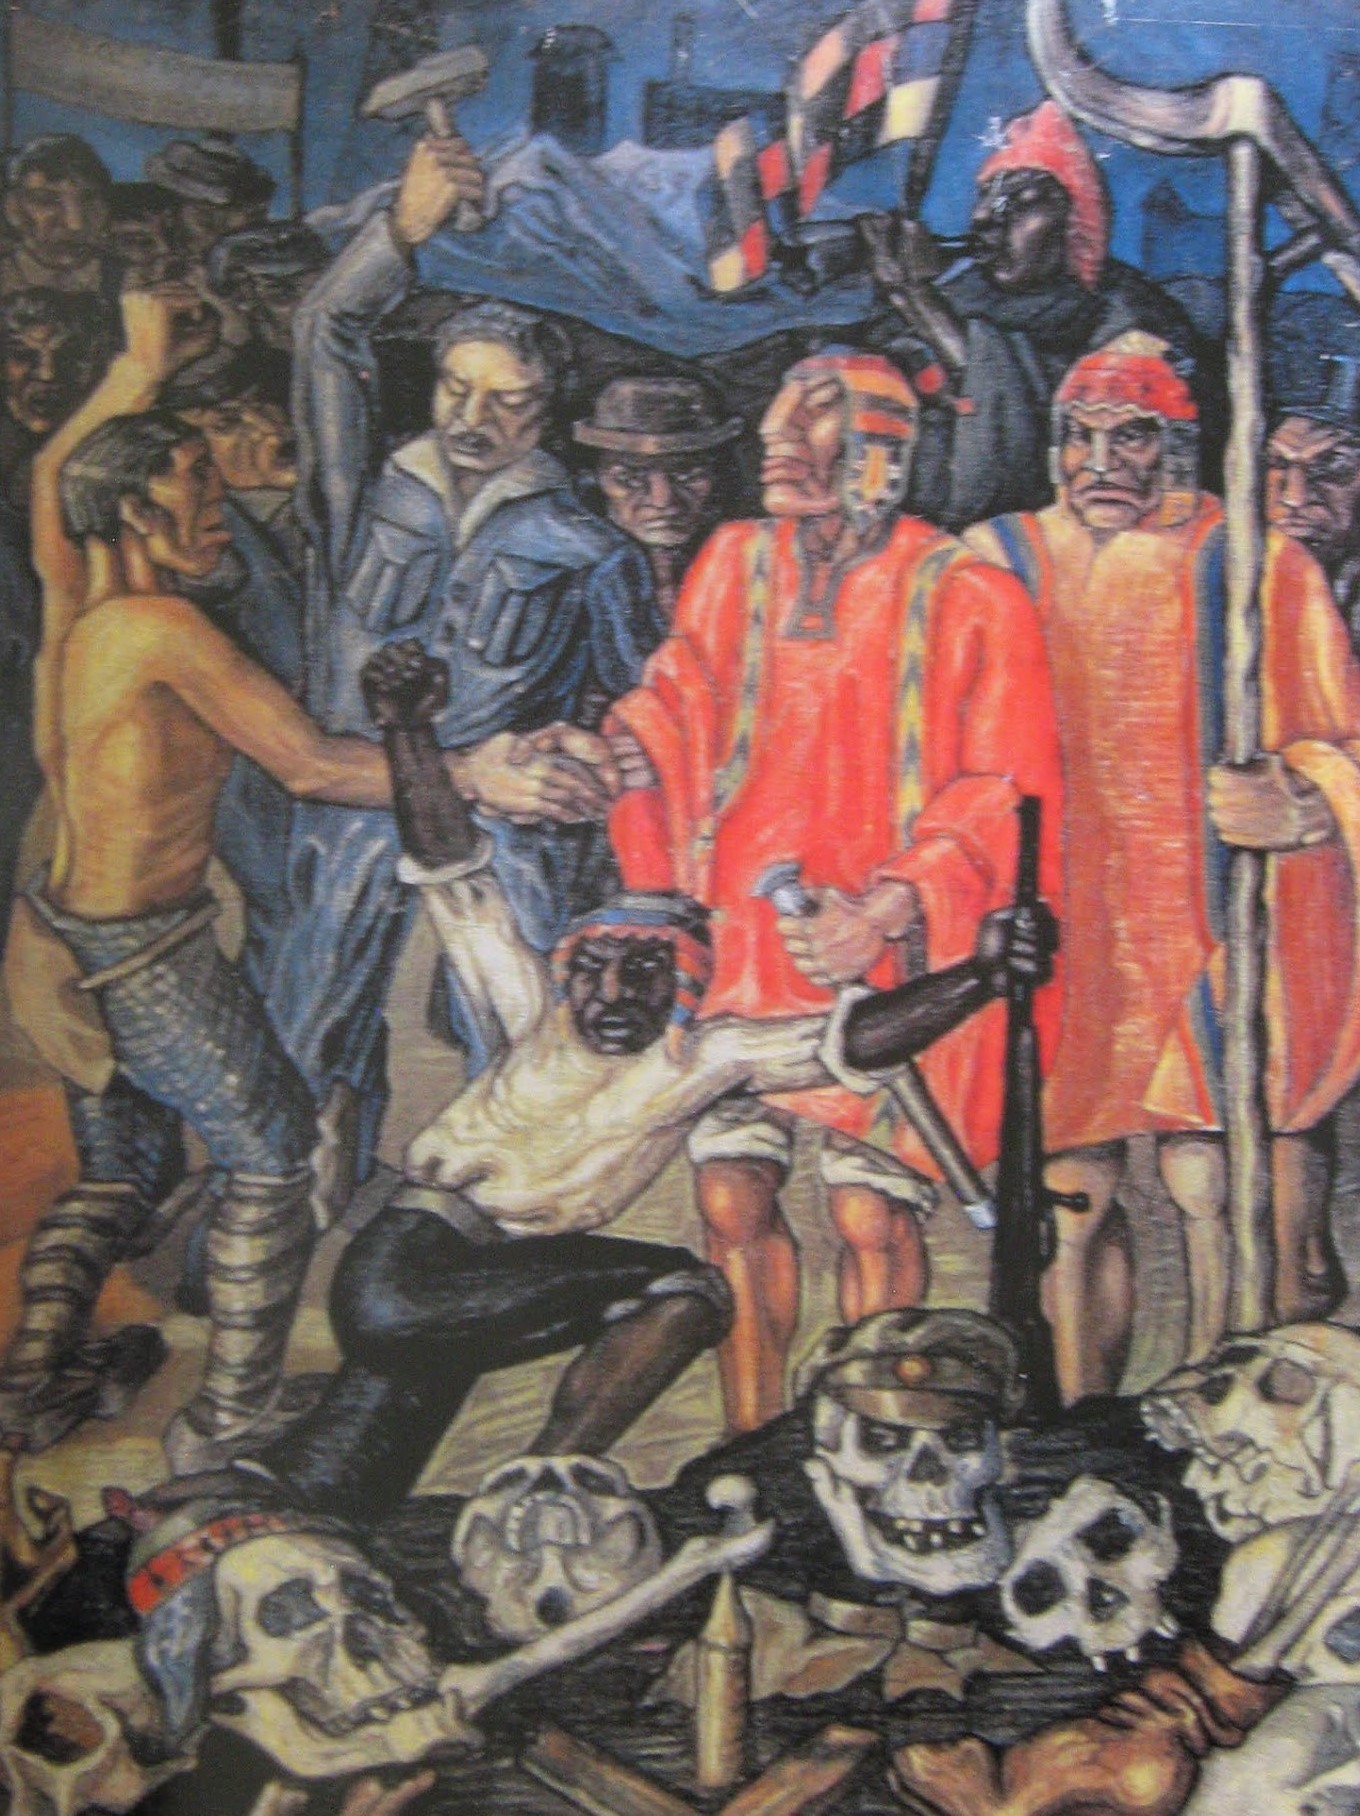 Alejandro Mario Illanes (1913-1961), el artista de Warisata que concibió al indio como dueño de su propio destino